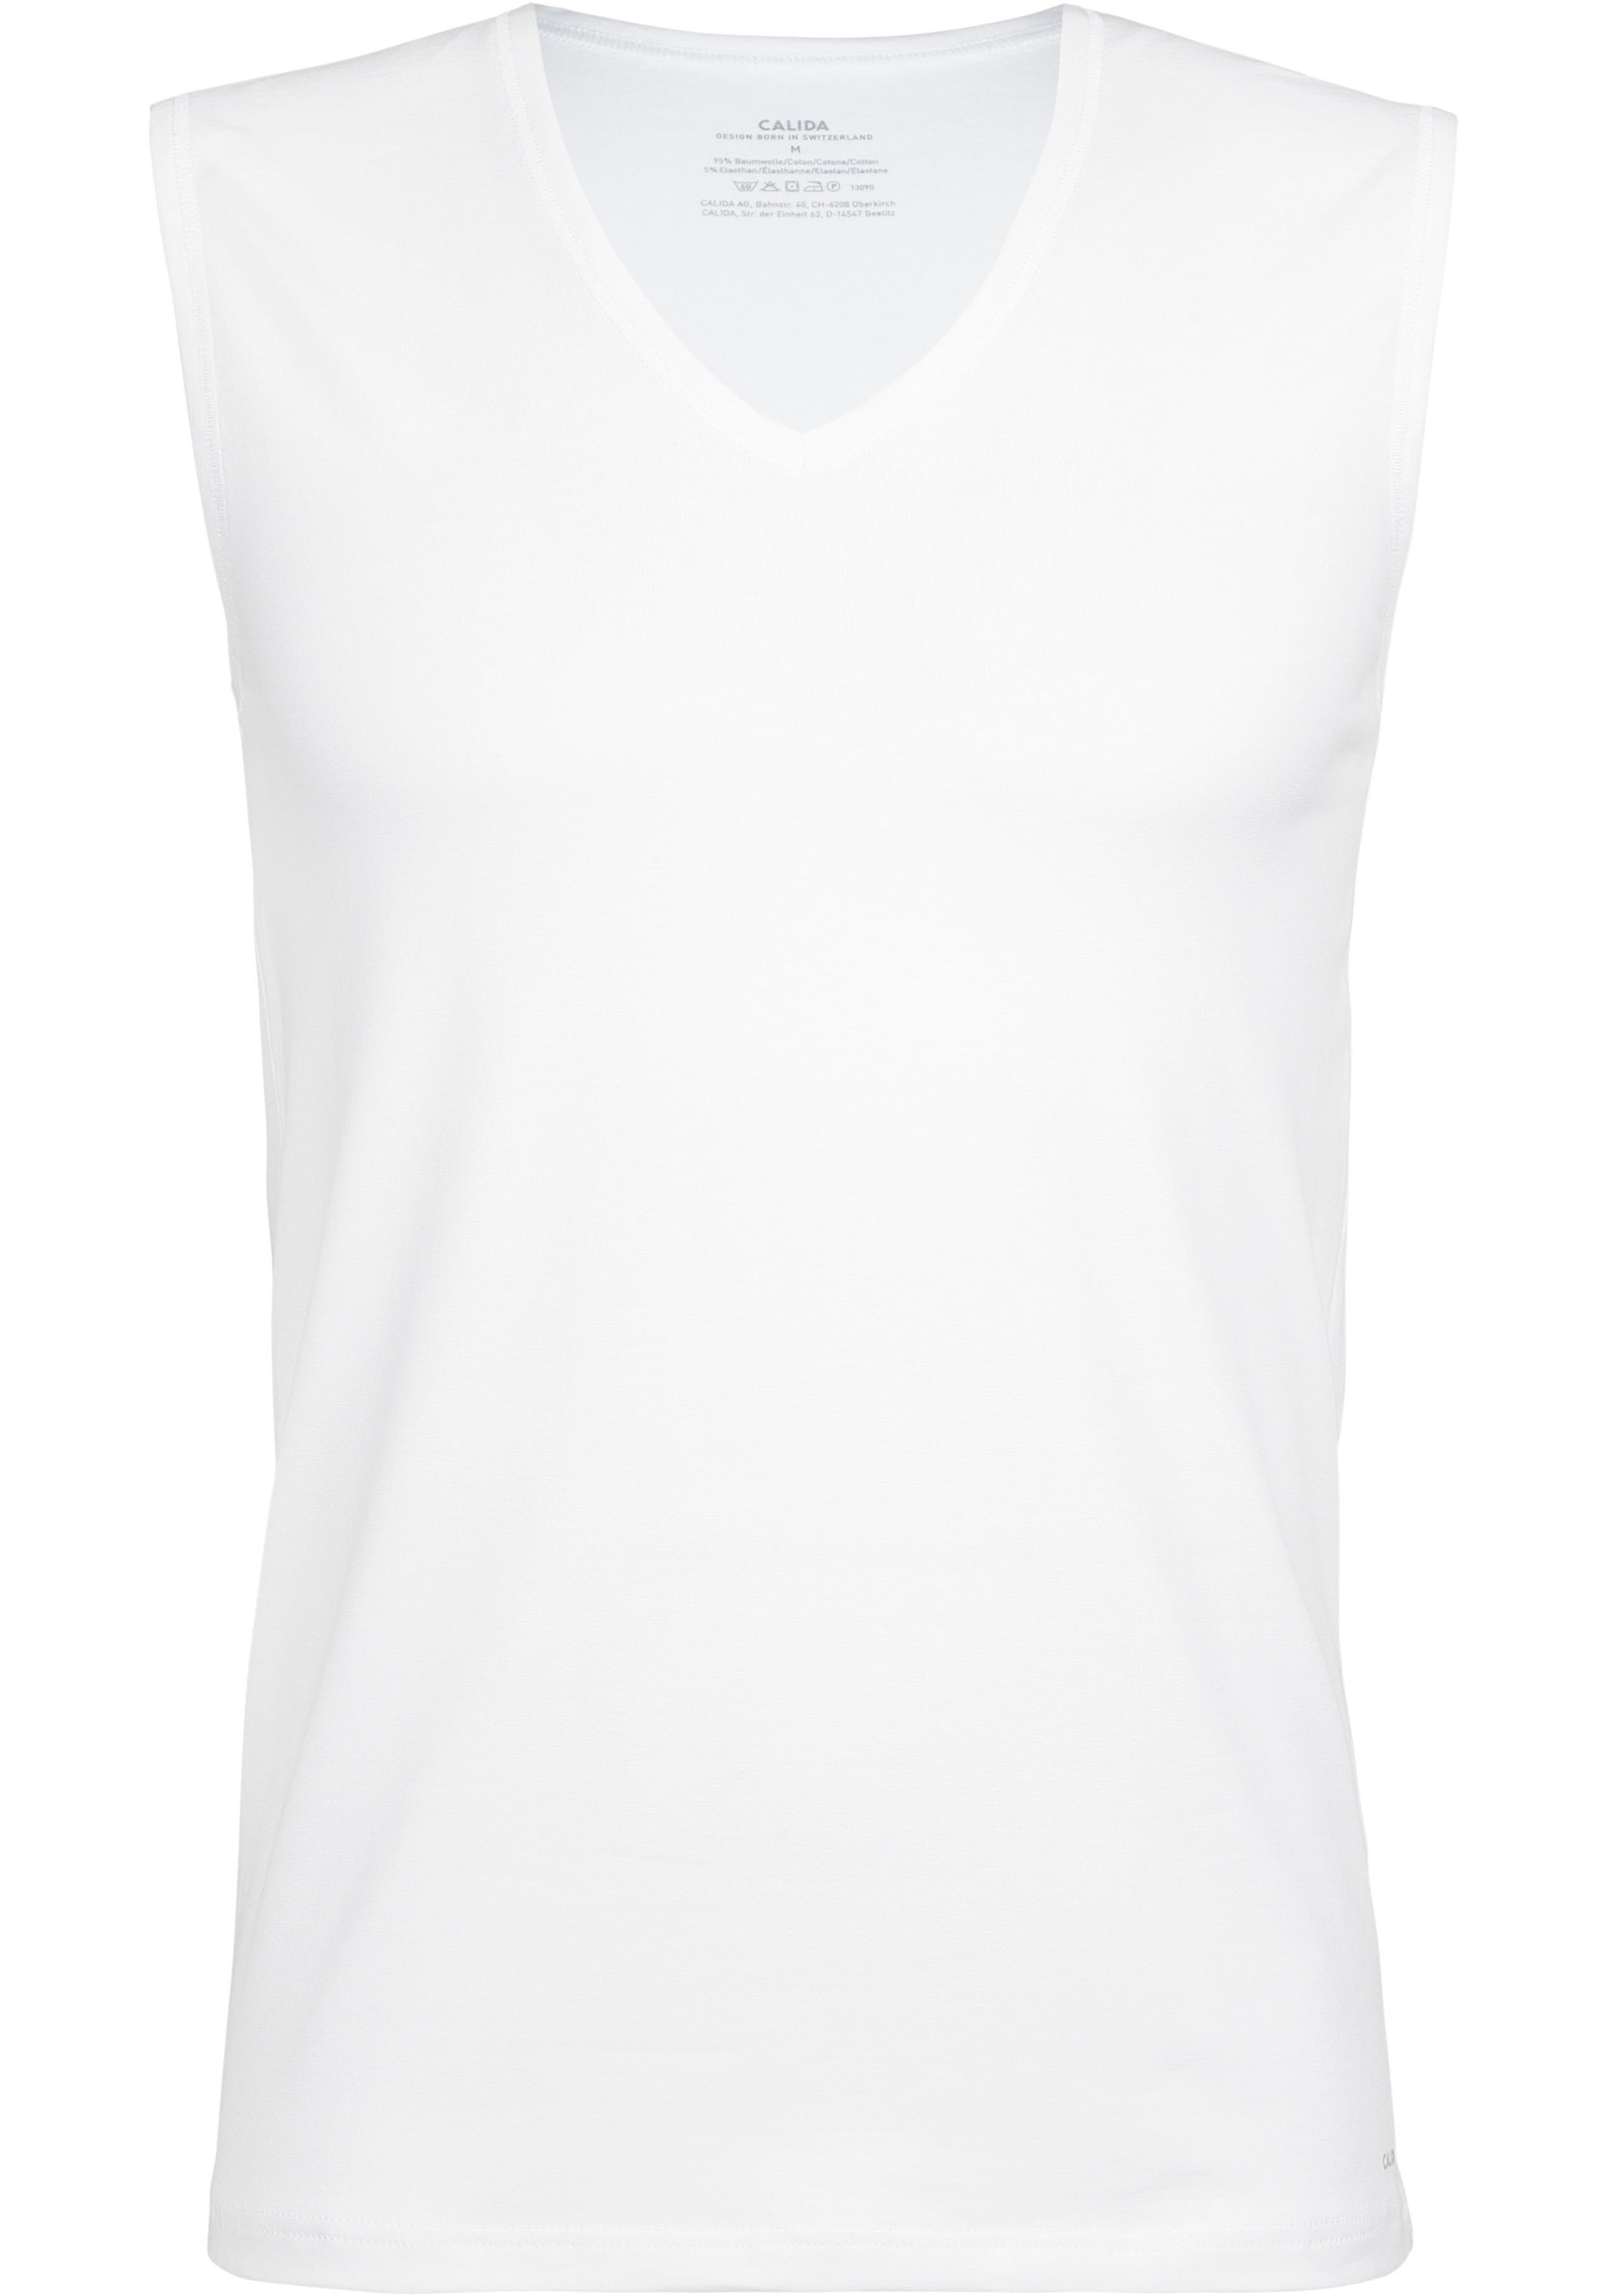 CALIDA Unterziehshirt »Cotton Code«, City-Shirt, V-Neck, glatte Oberfläche, sportliches Shirt